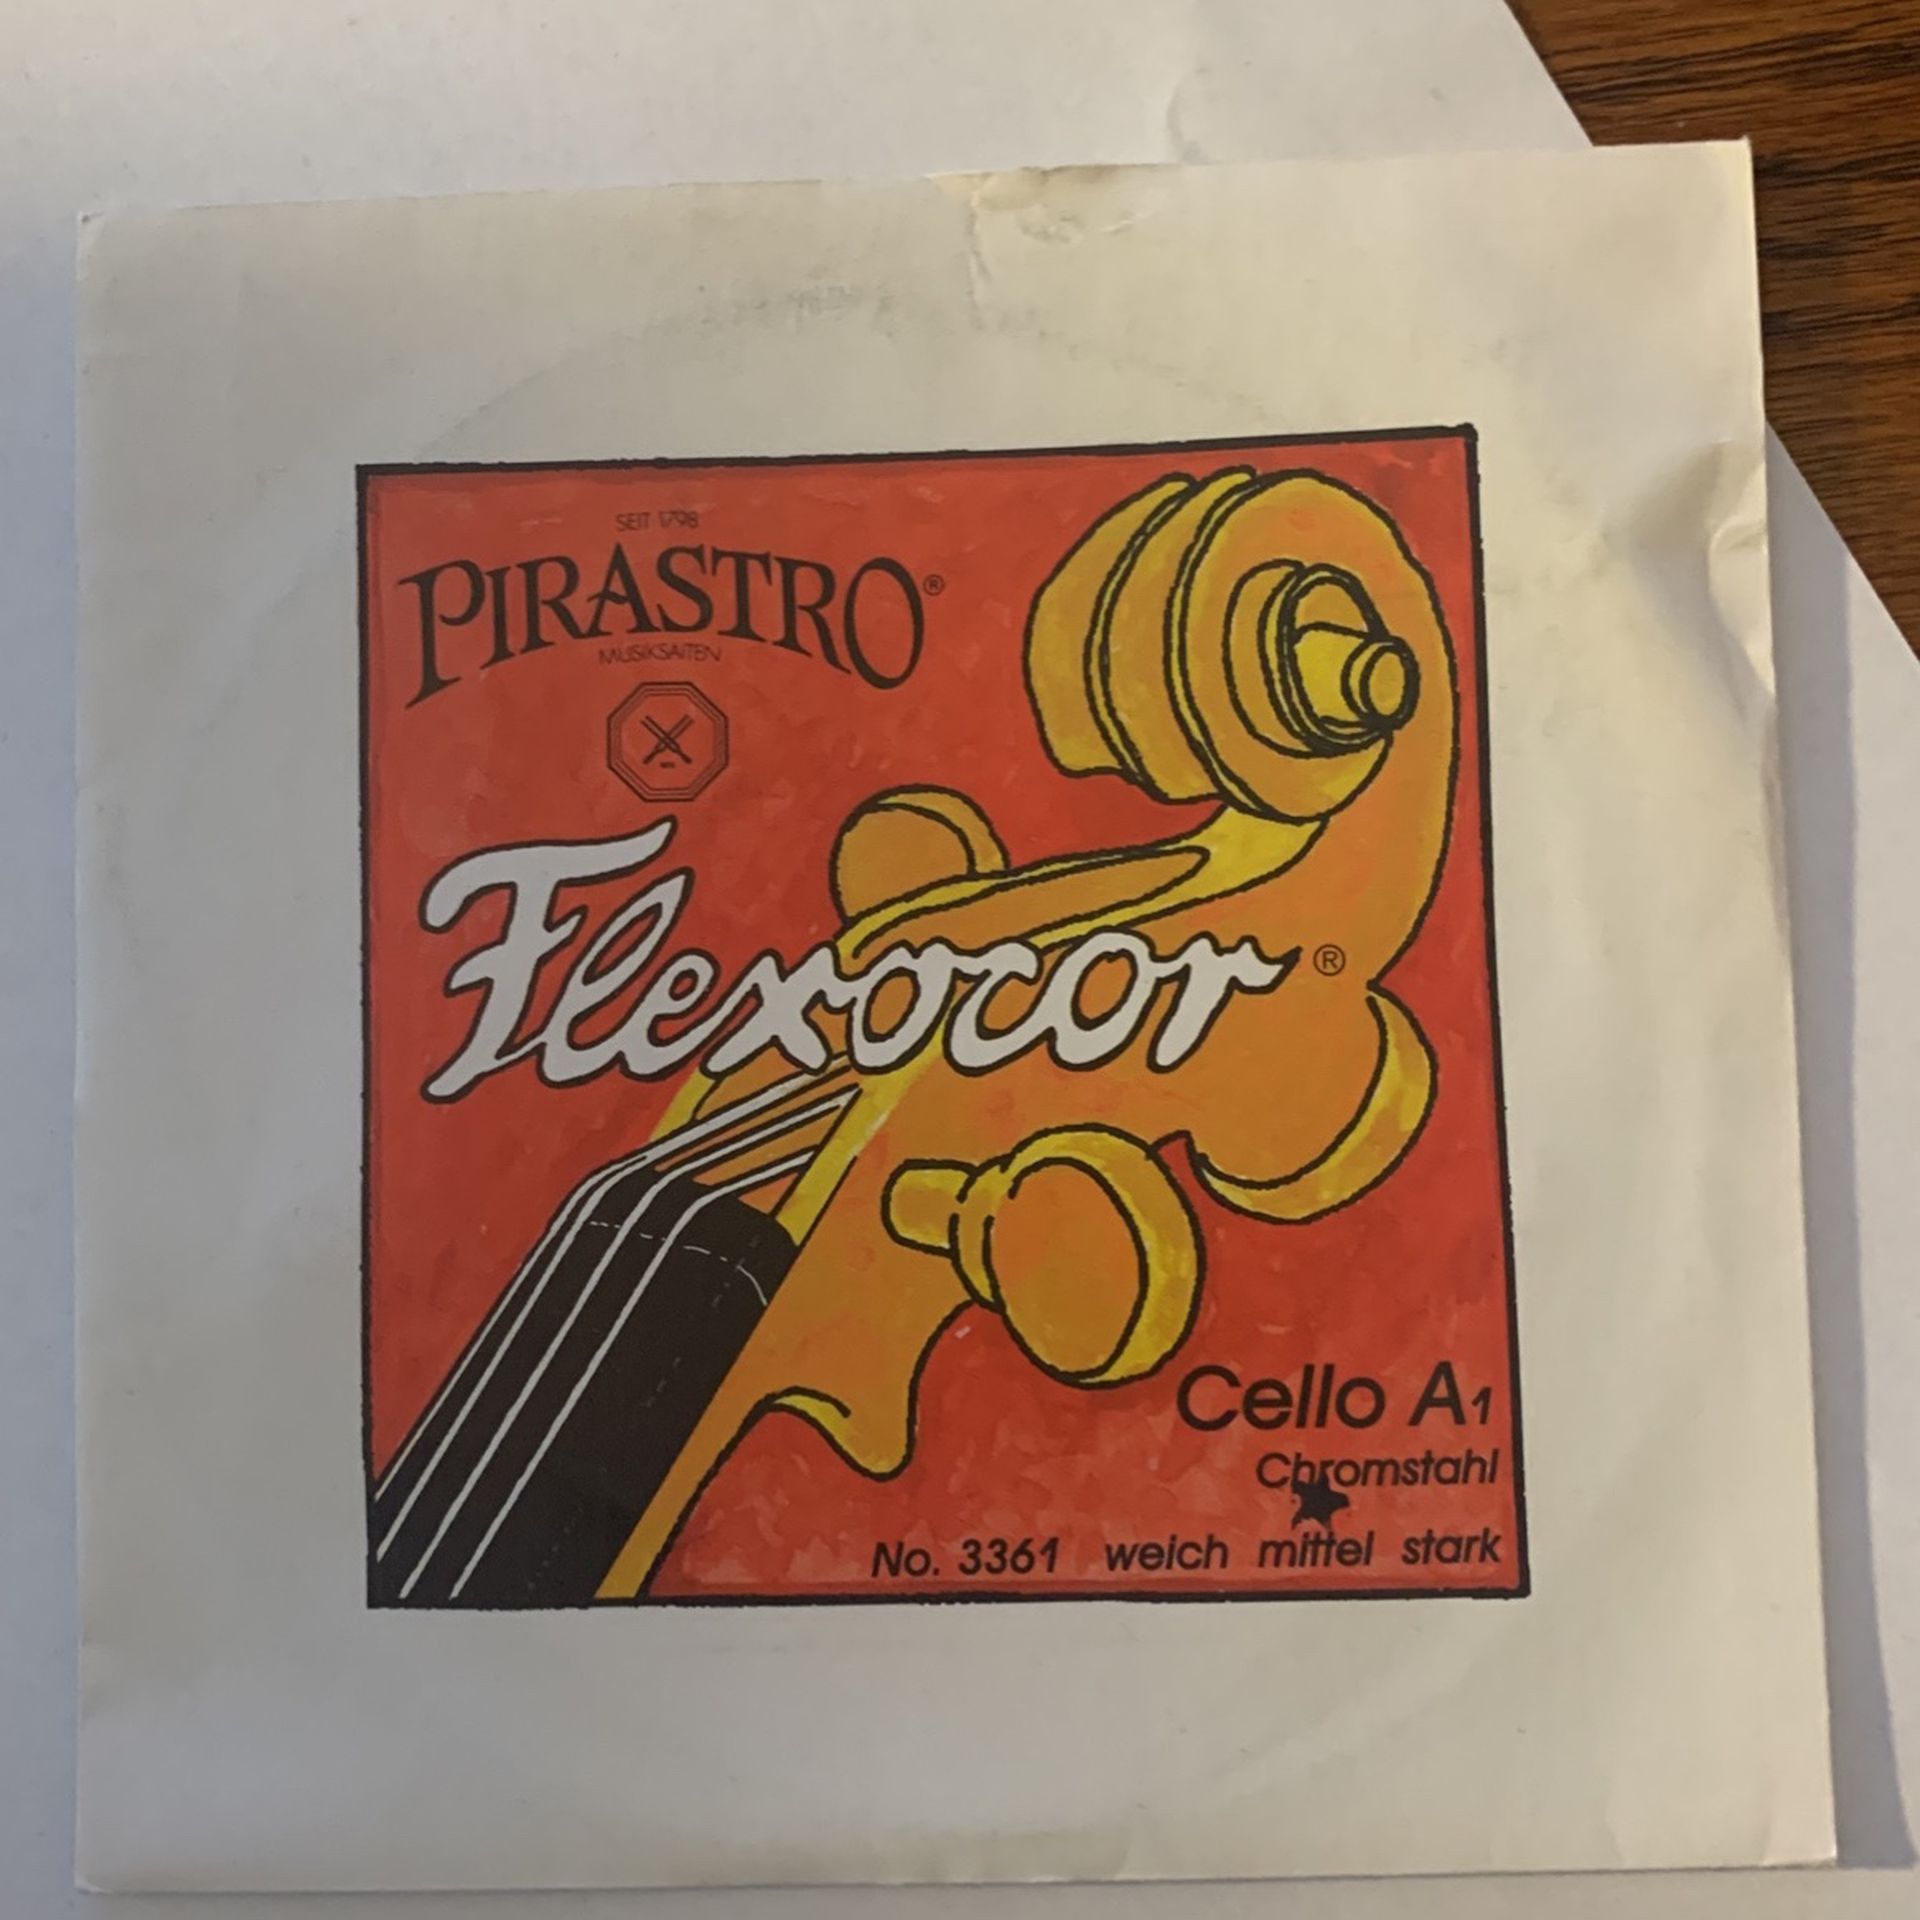 Pirastro Flexocor 4/4 Cello A String New